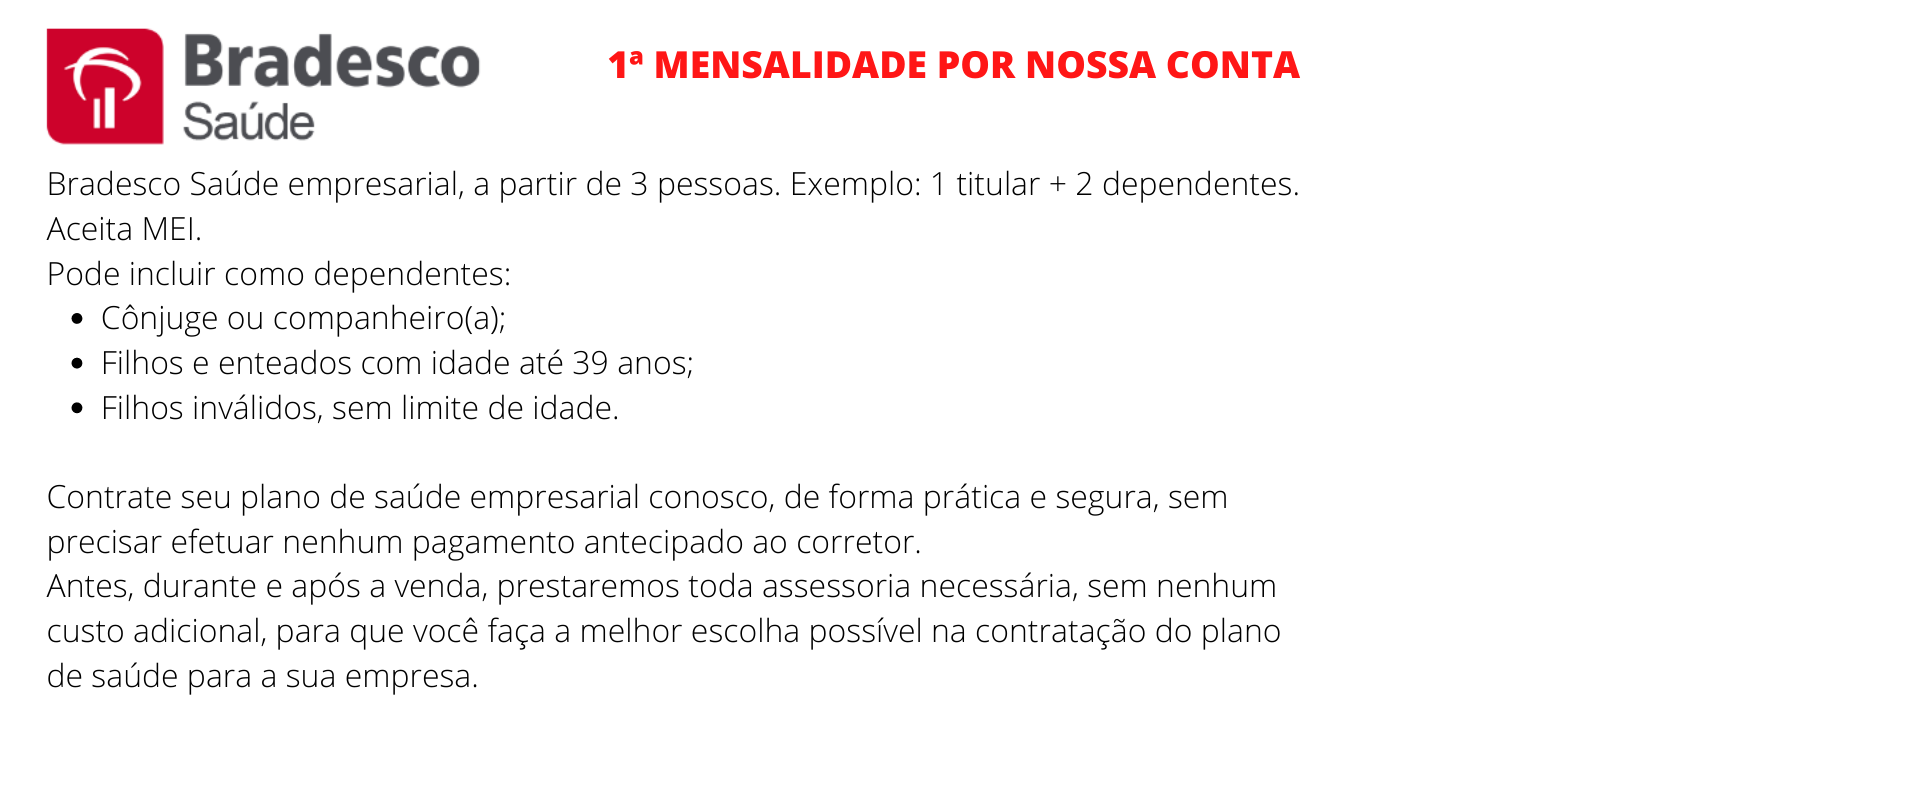 Bradesco Saúde Empresarial - Joinville